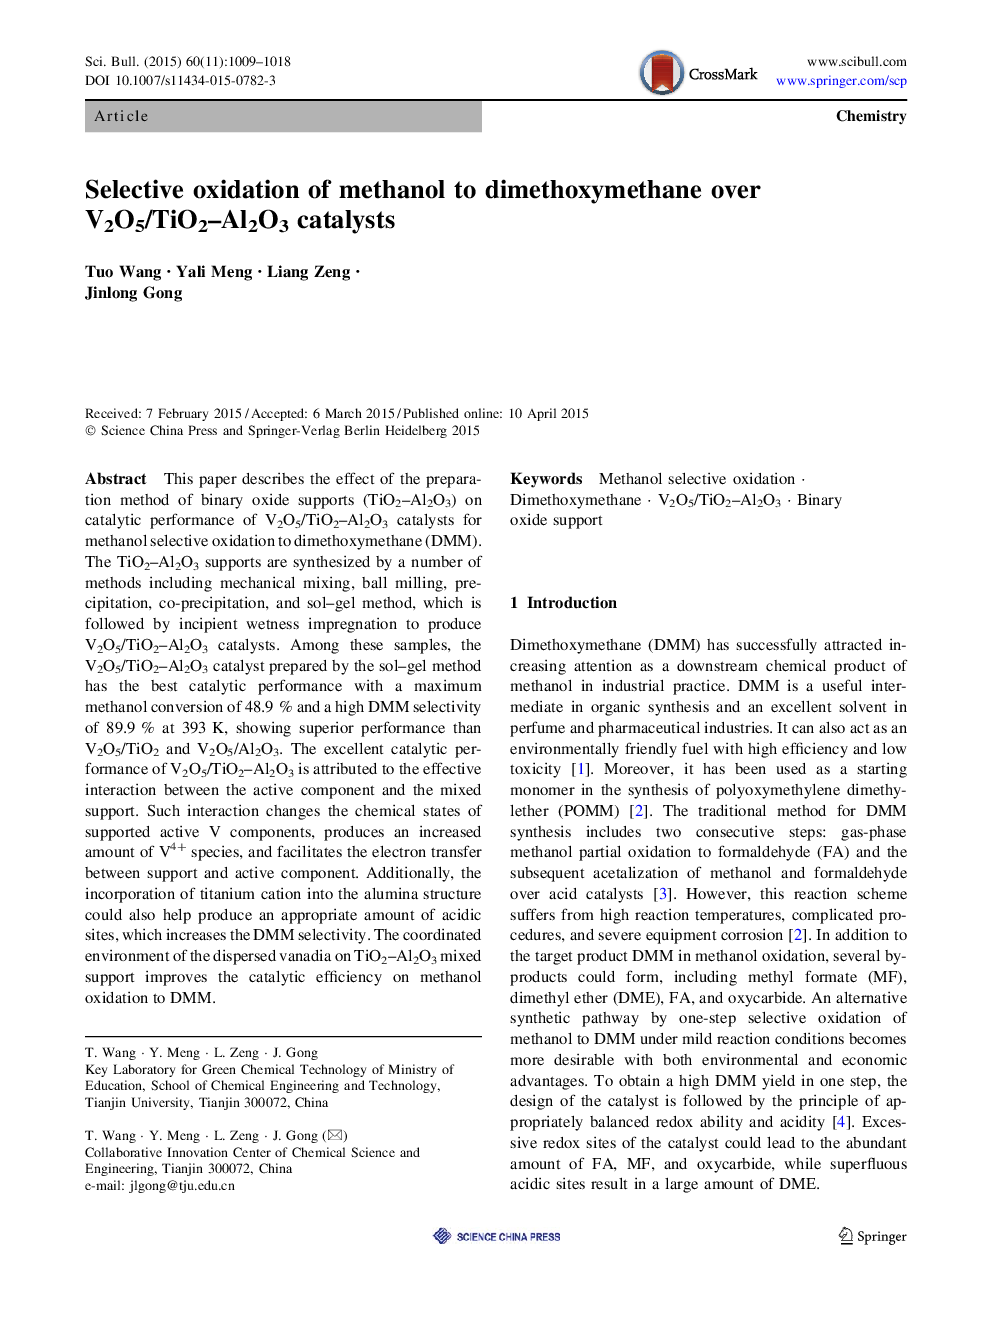 Selective oxidation of methanol to dimethoxymethane over V2O5/TiO2-Al2O3 catalysts